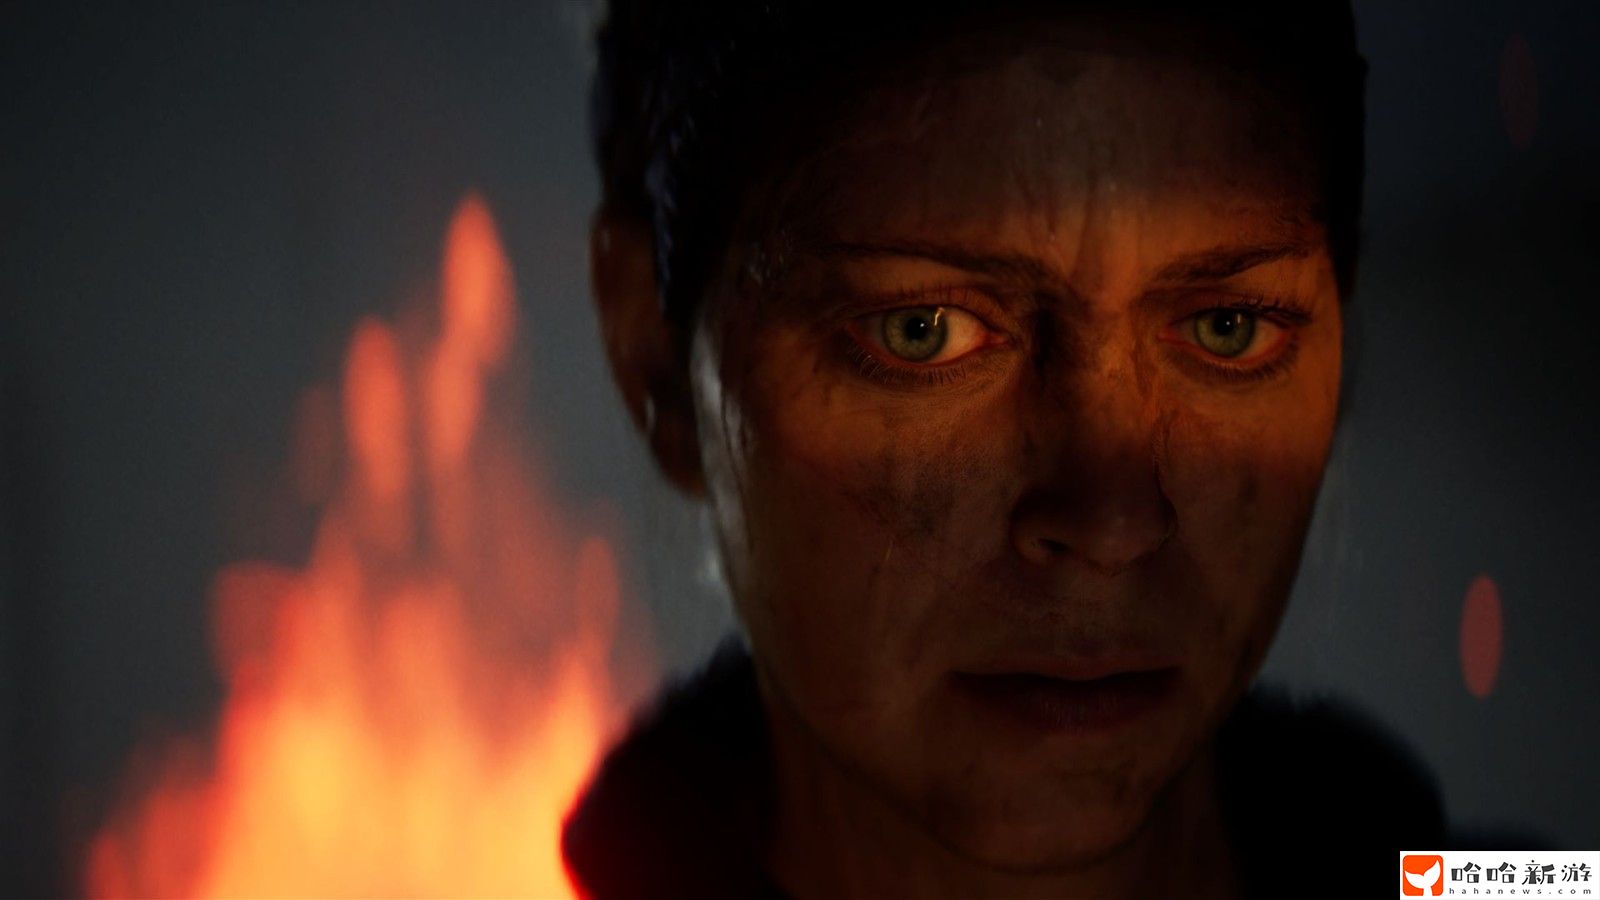 《地狱之刃2》团队与专家合作了解精神病 更好描绘角色